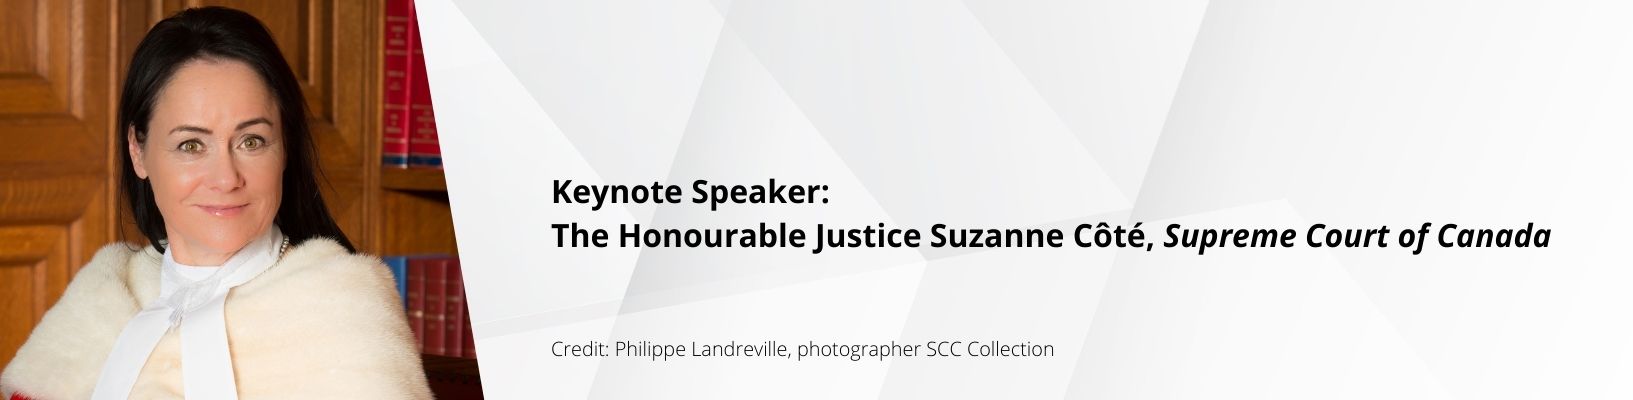 The Honourable Suzanne Côté